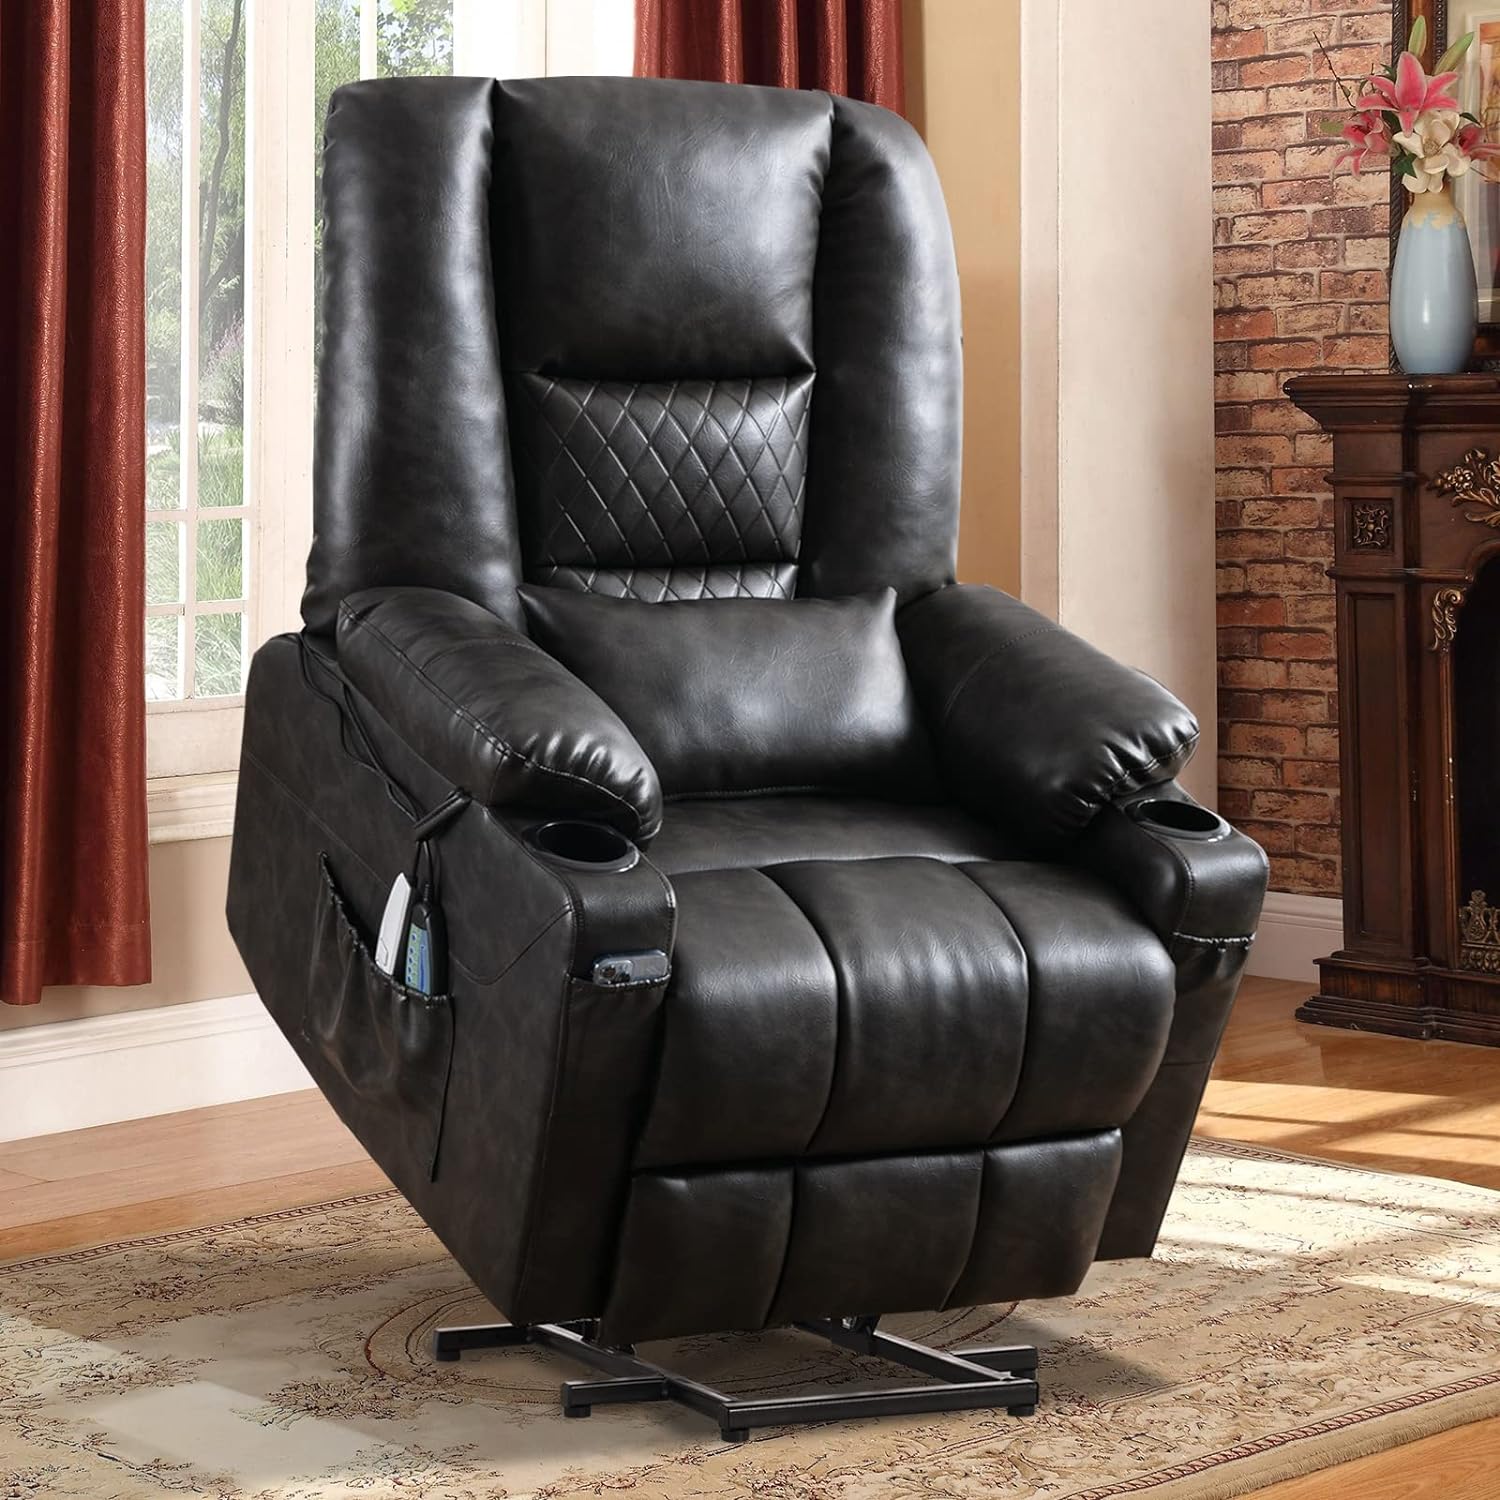 Кресло с откидной спинкой Power Lift, удобное кресло-кровать, диван для пожилых людей